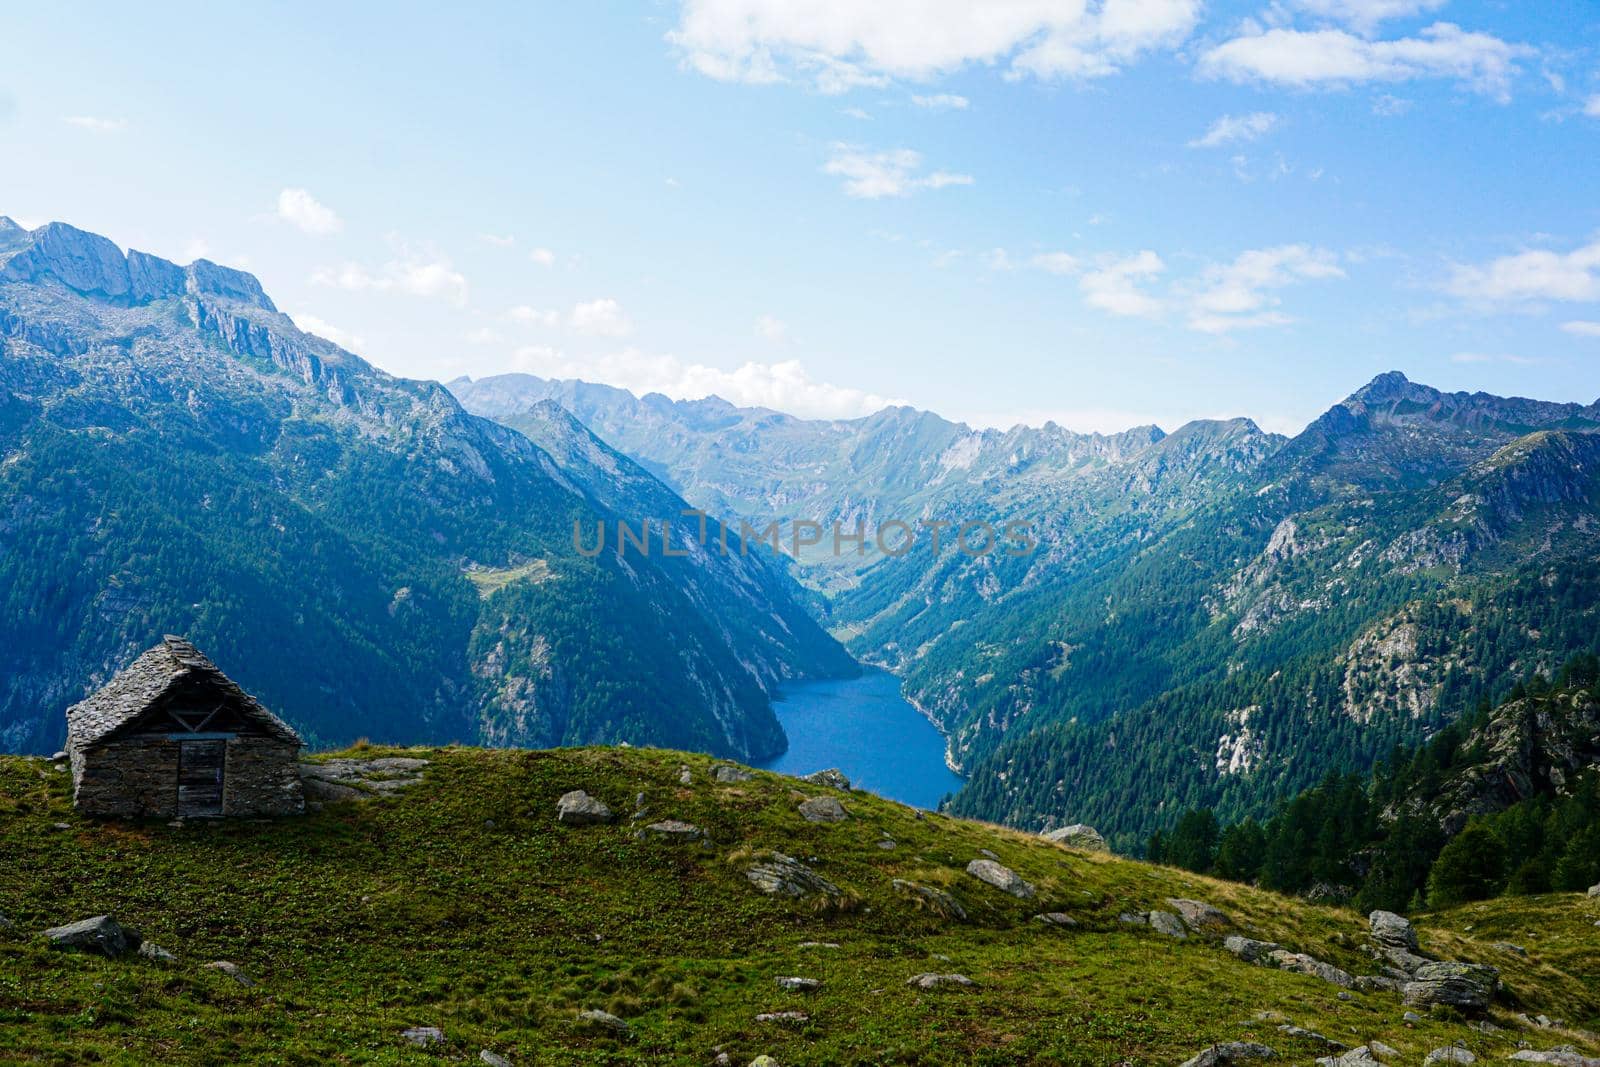 Corte di Mezzo & Lago del Sambuco within dramatic landscape of Val Lavizzara, Switzerland by pisces2386